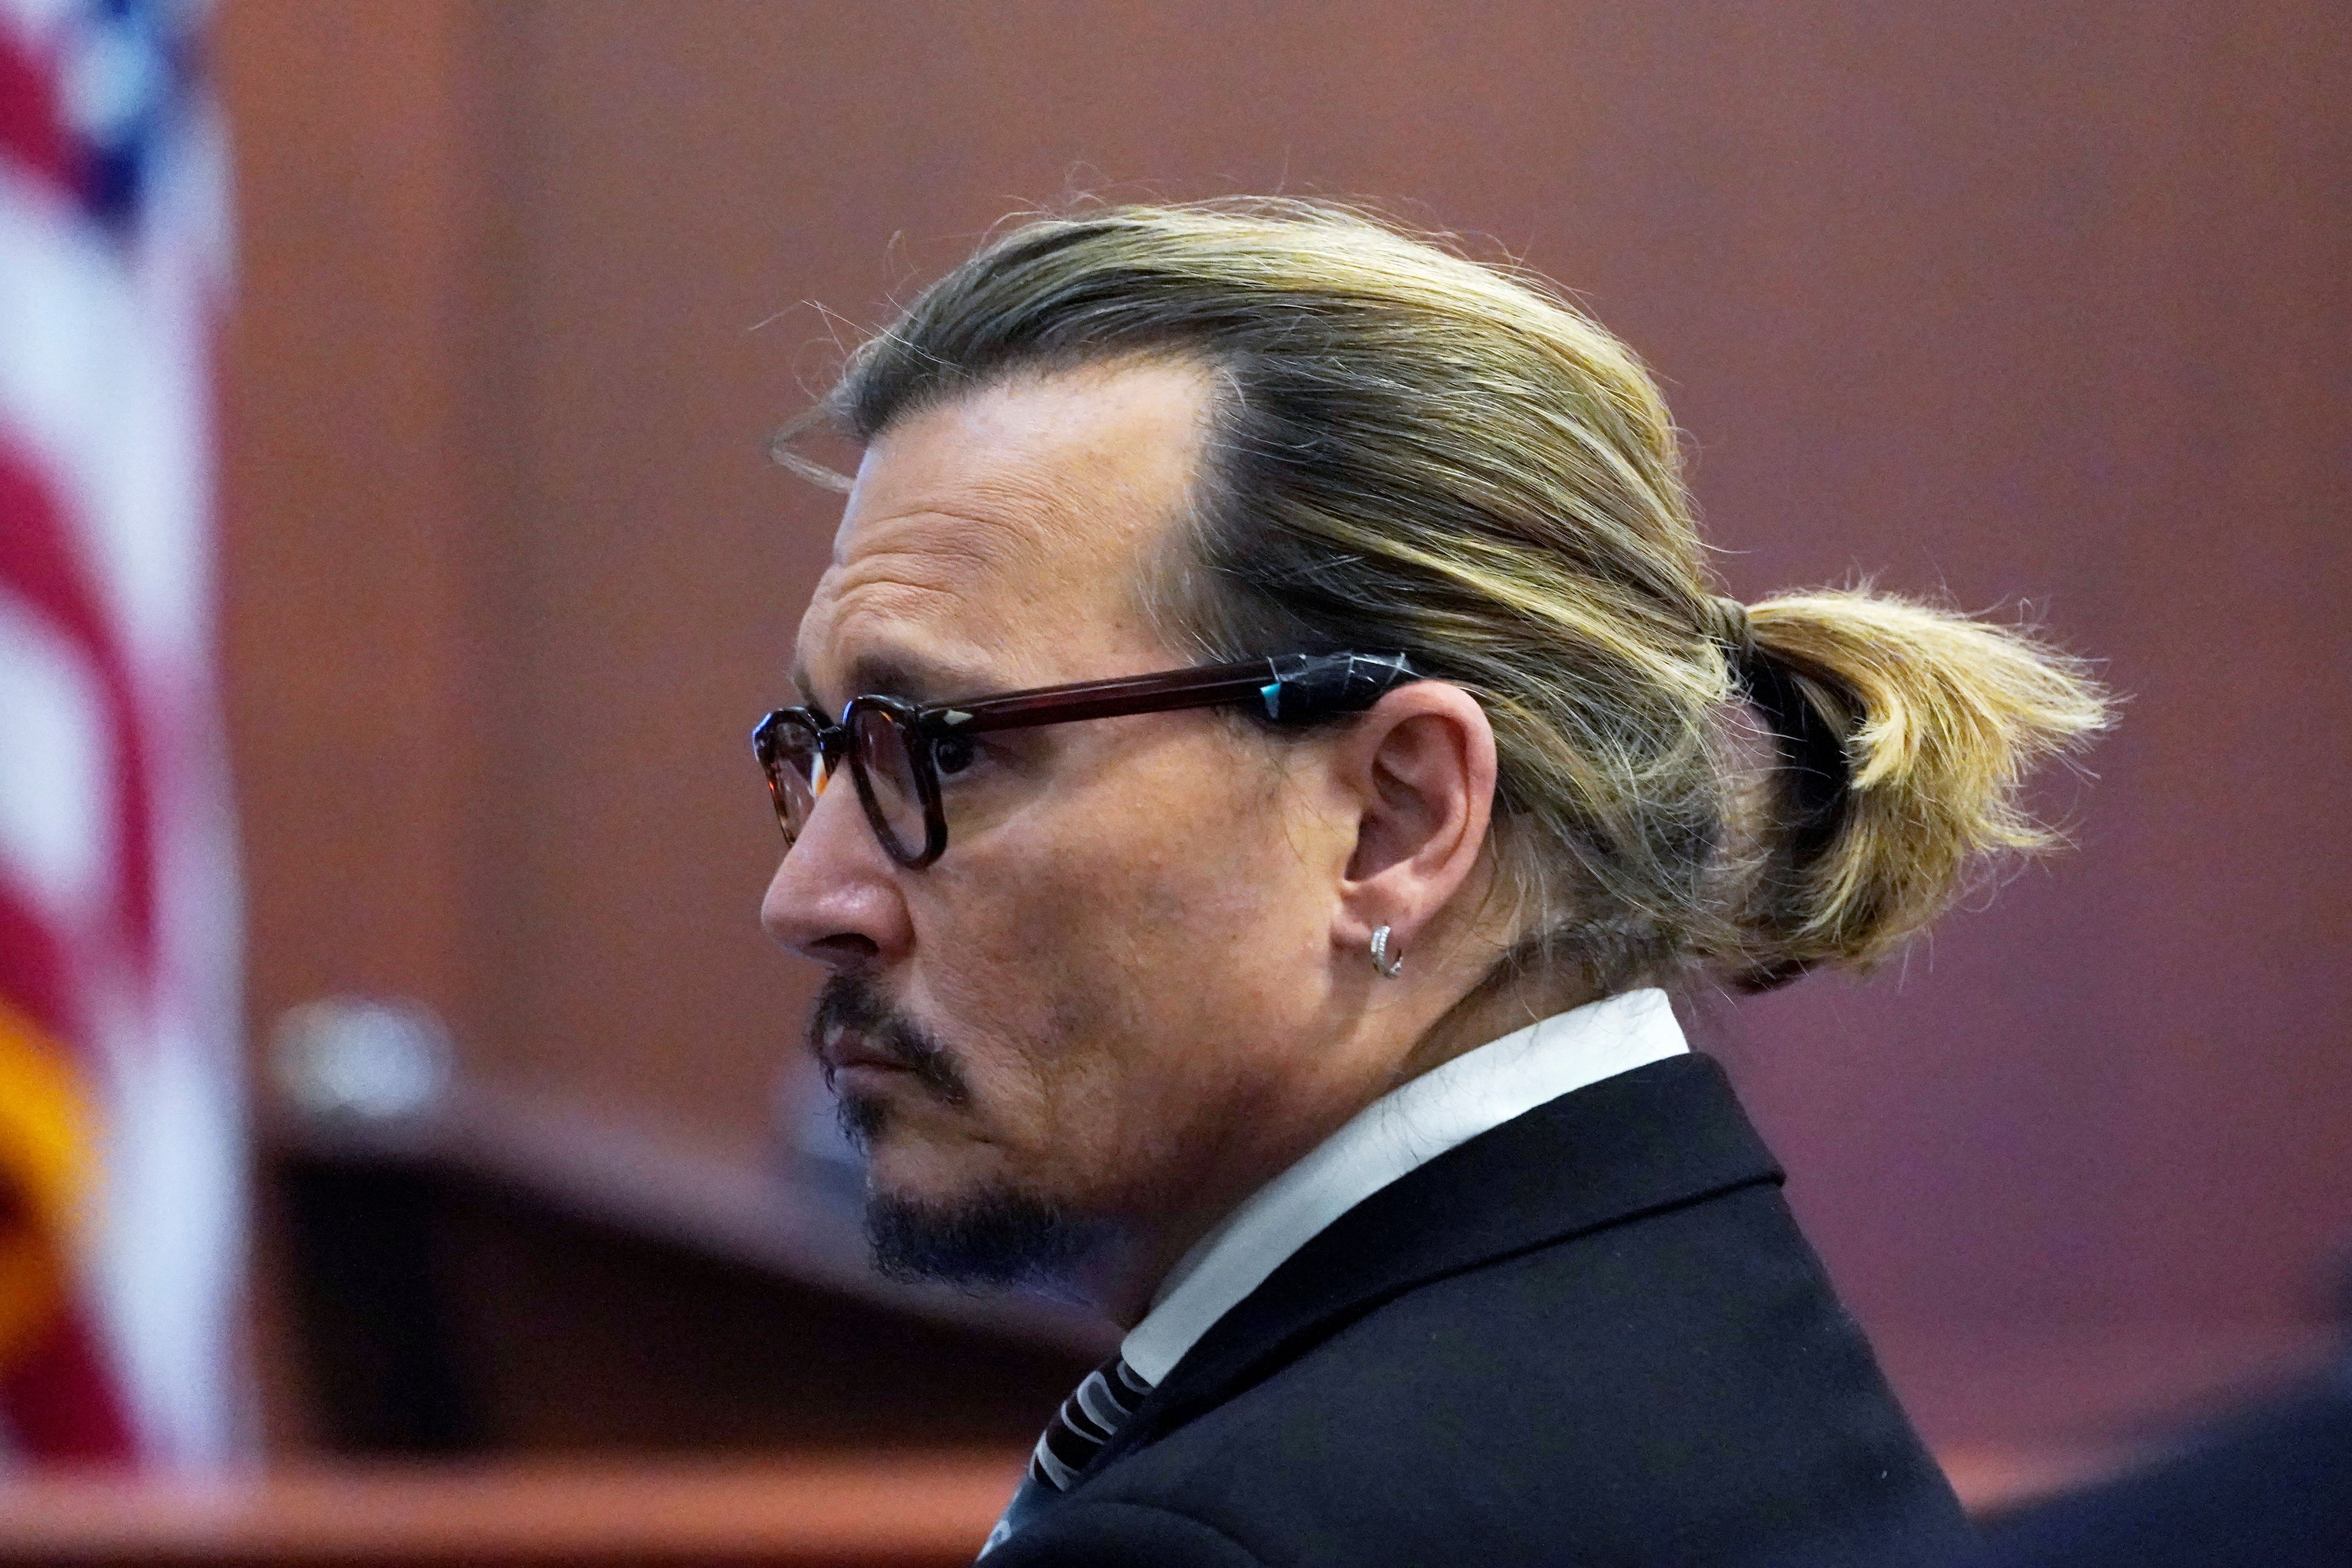 Após tribunal, carreiras de Johnny Depp e Amber Heard enfrentam